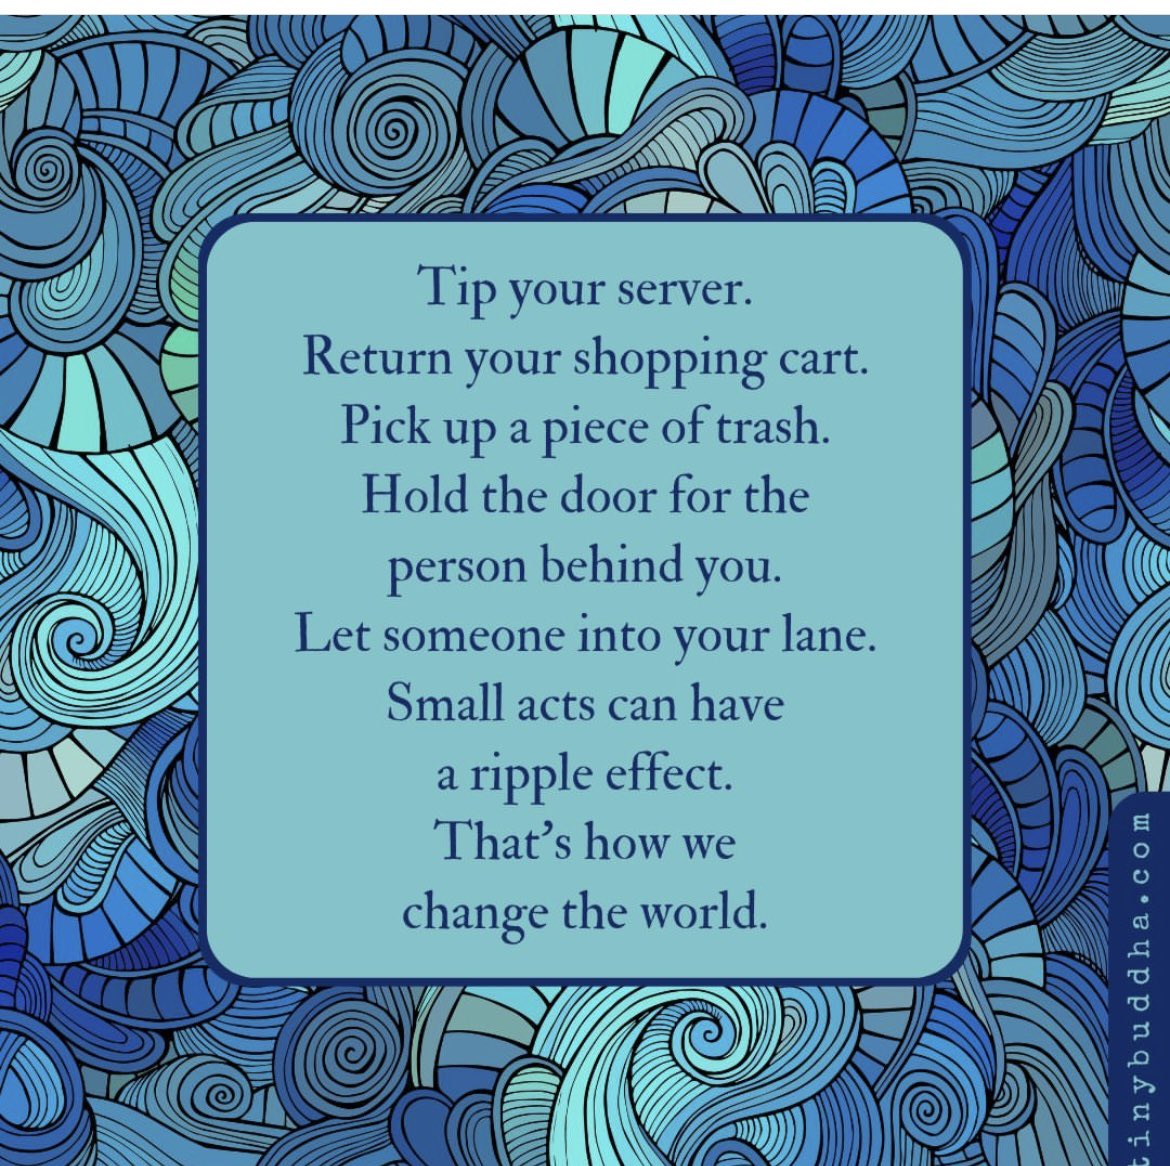 #tipyourserver. #returnyourcart #pickuptrash #holdthedoor #smile #smallacts #bekind  Just be kind! 🙂